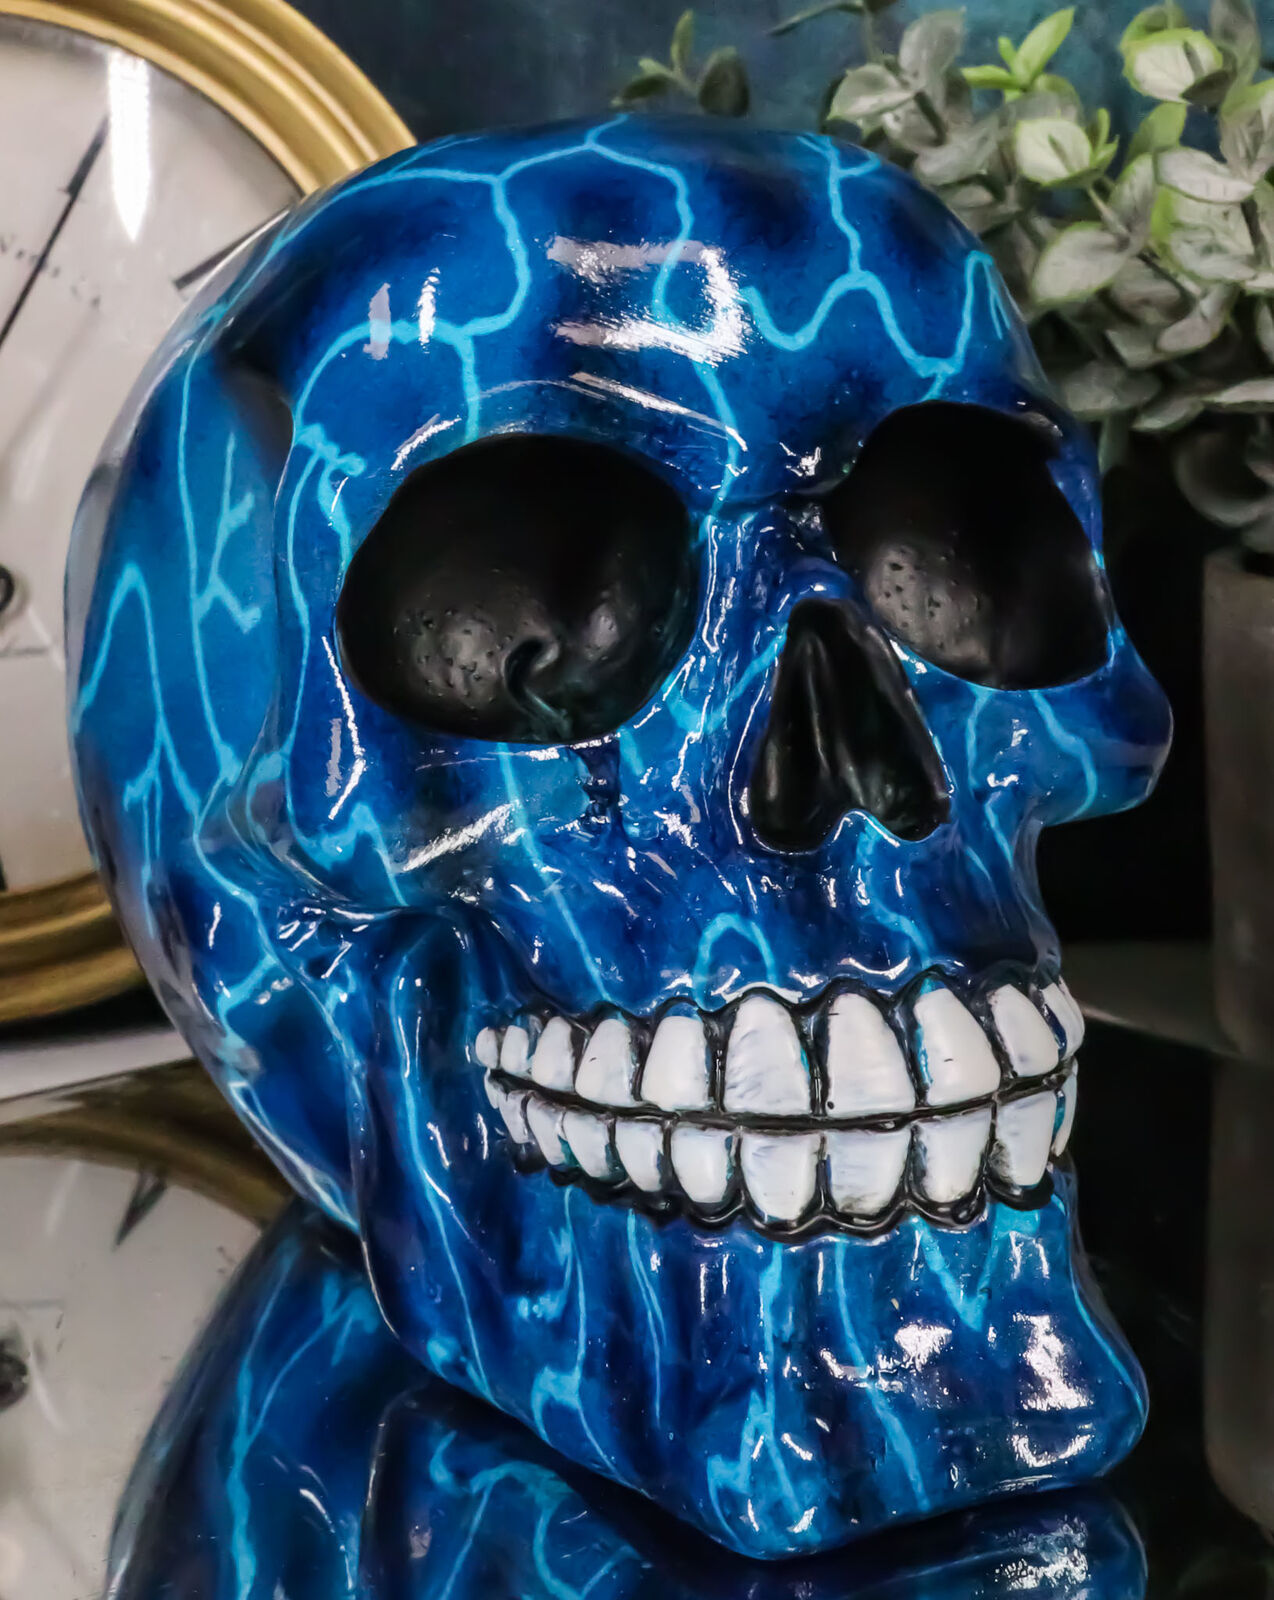 Zeus Lightning Bolt Thunder Storm System Blue Thunderbolt Skull Macabre Figurine